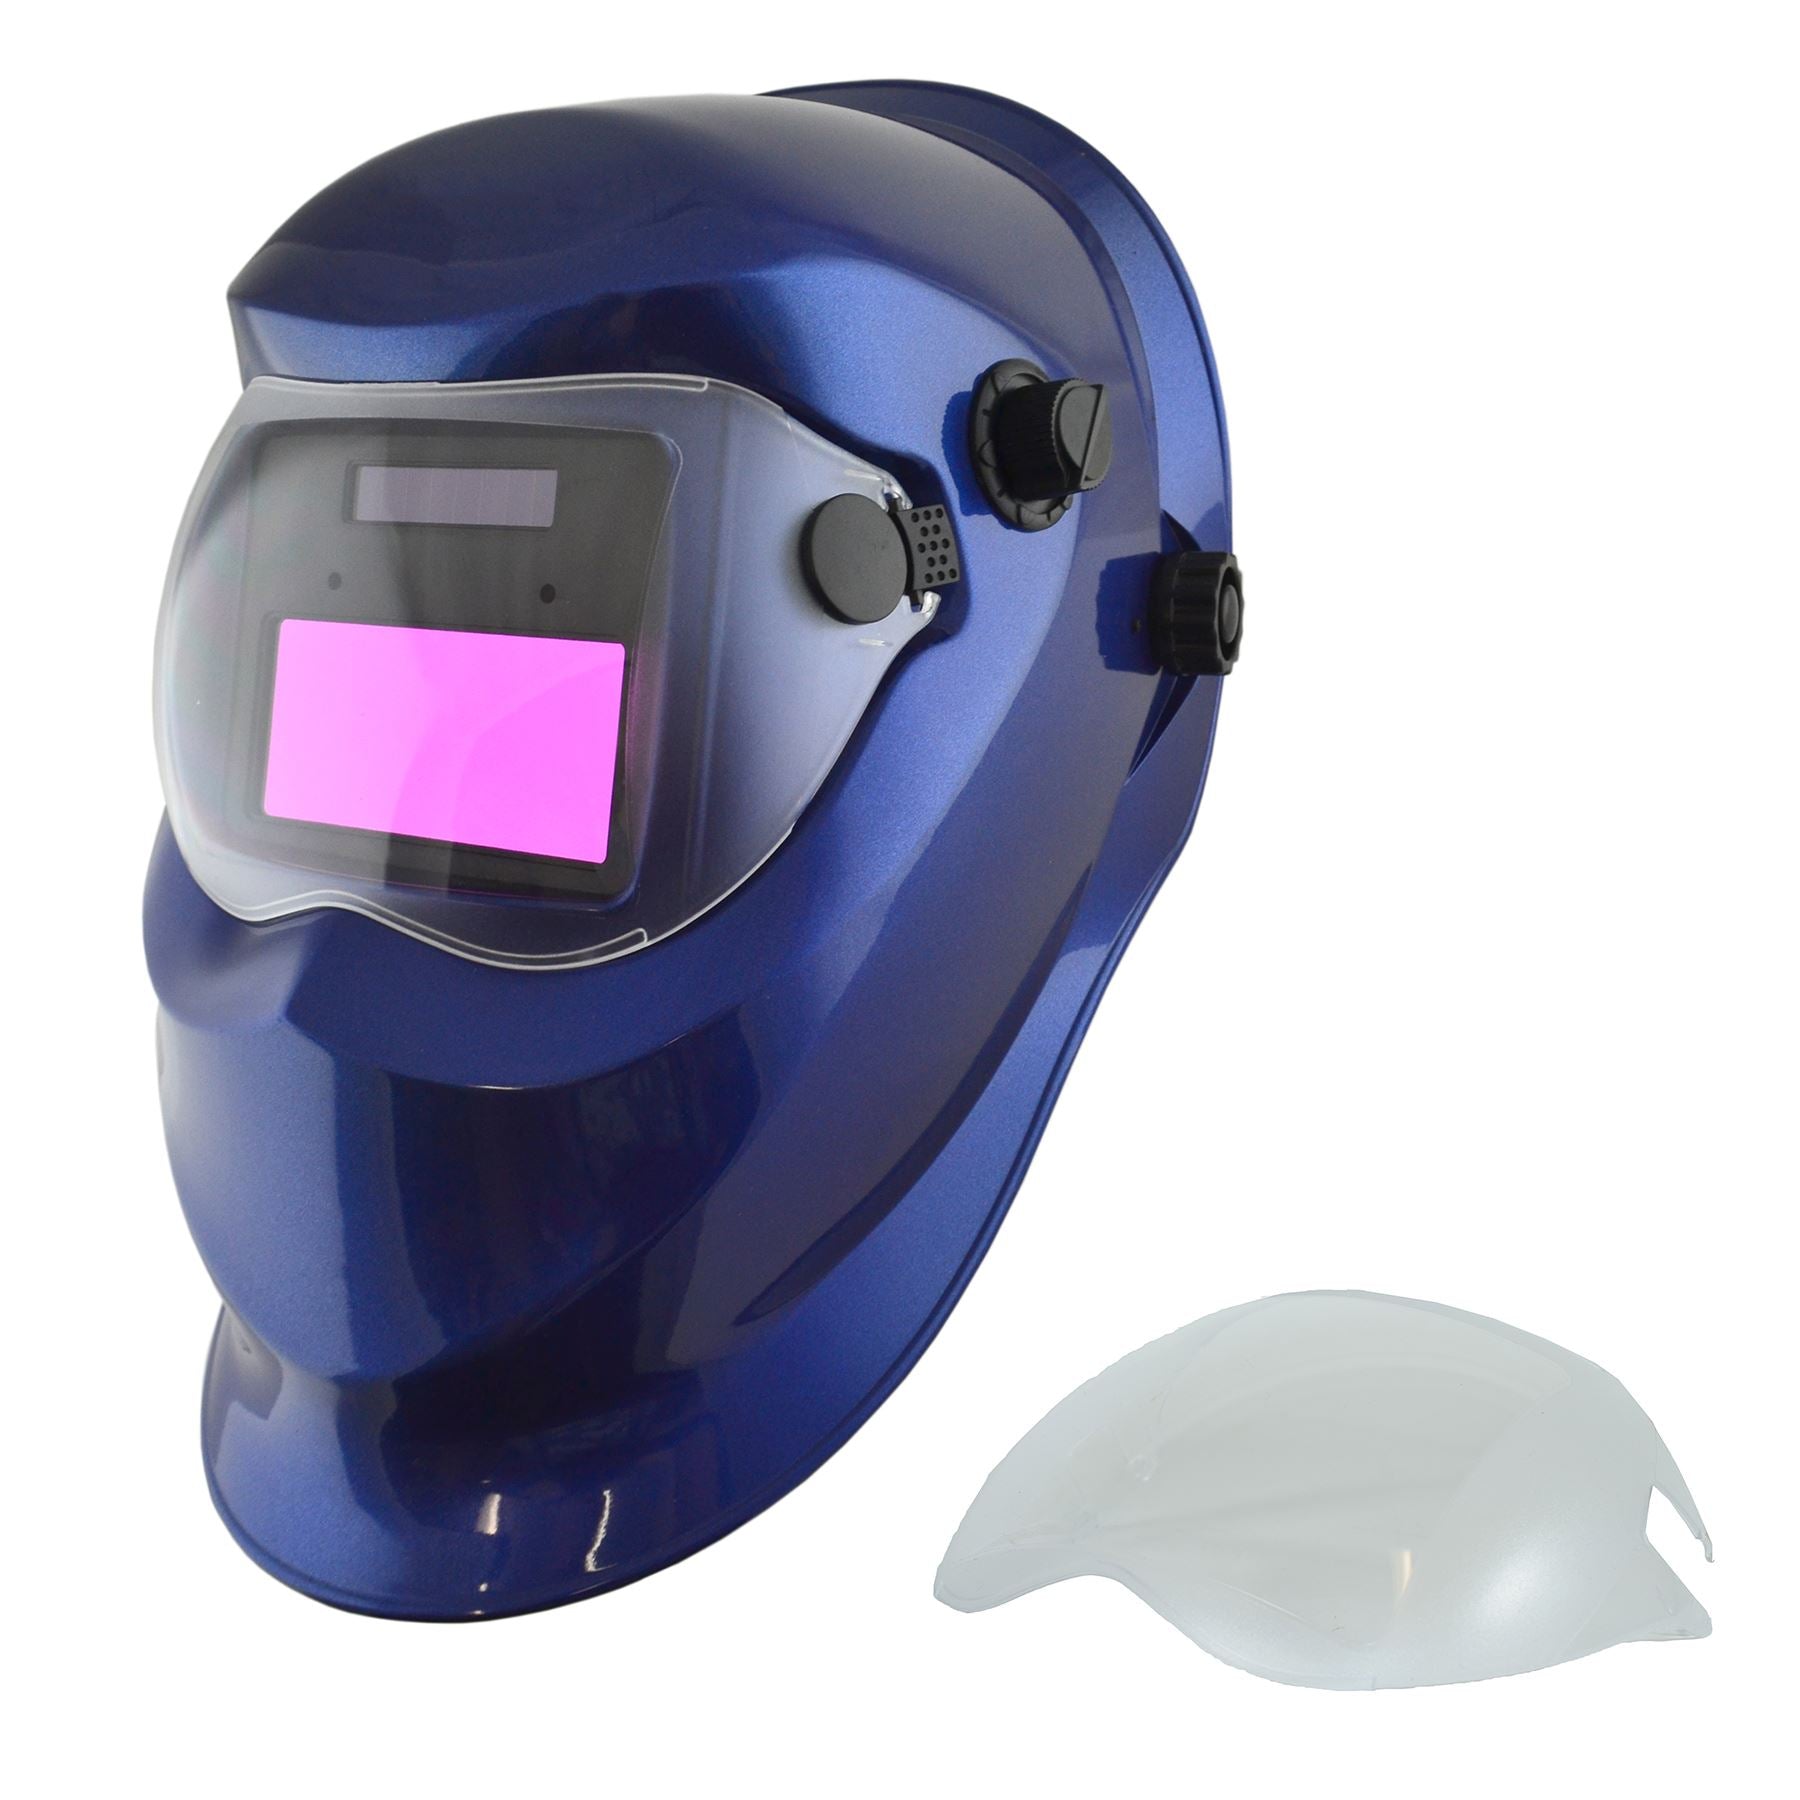 Auto Darkening Welders Helmet Mask Welding Grinding Blue & 1 x Lens Cover